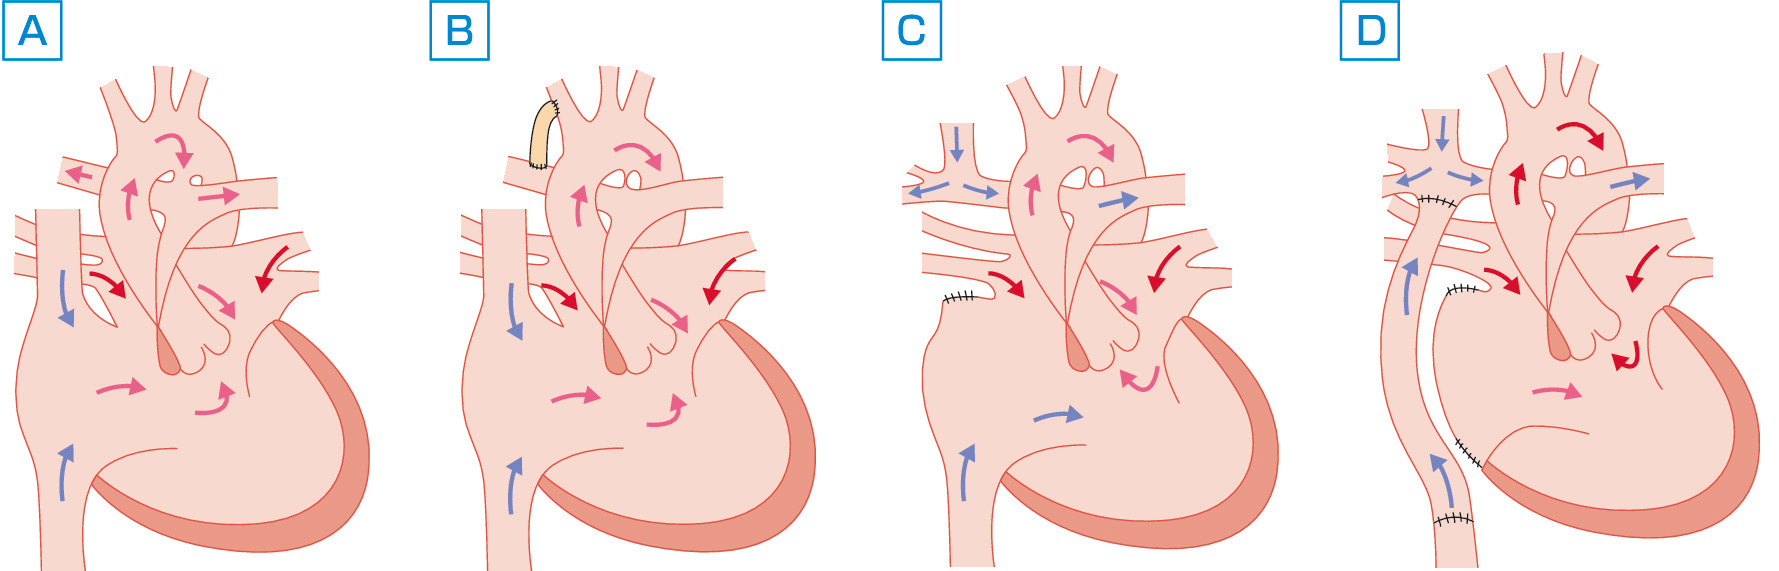 ⓔ図8-8-18　単心室 (SV) 疾患における段階的手術 A：肺動脈閉鎖を伴う単心室，B：Blalock–Taussig短絡術後，C：両方向性Glenn手術後，D：Fontan手術後．